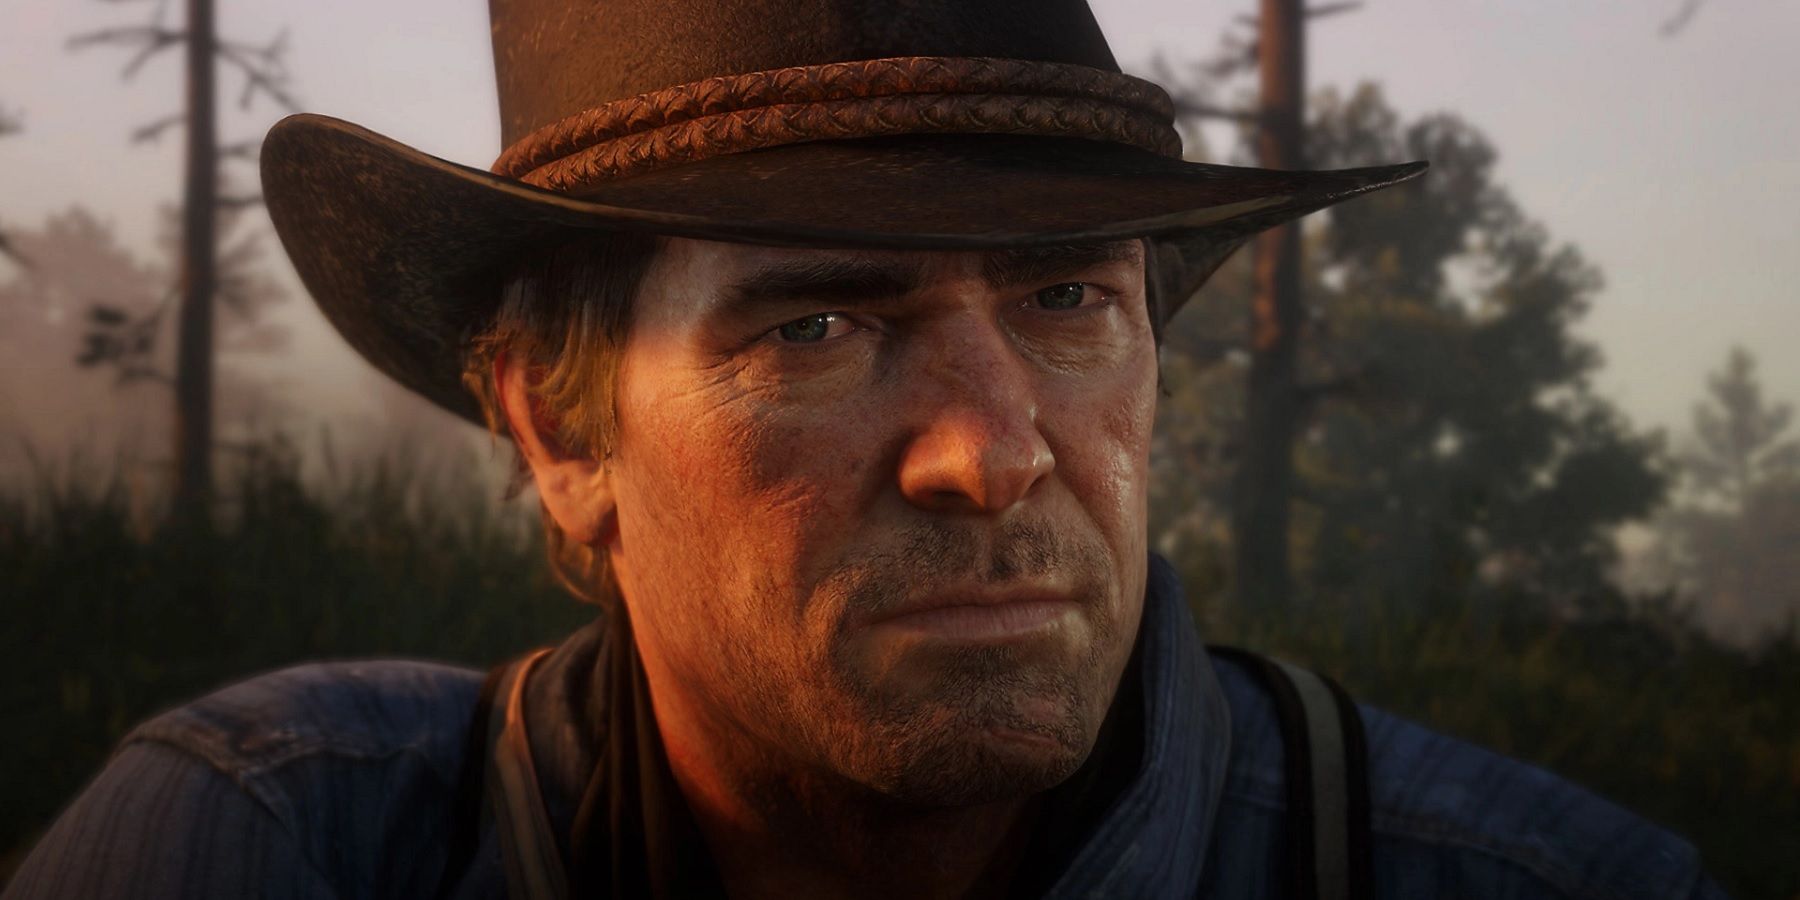 Rockstar tilsyneladende siger farvel til Red Dead Redemption 2